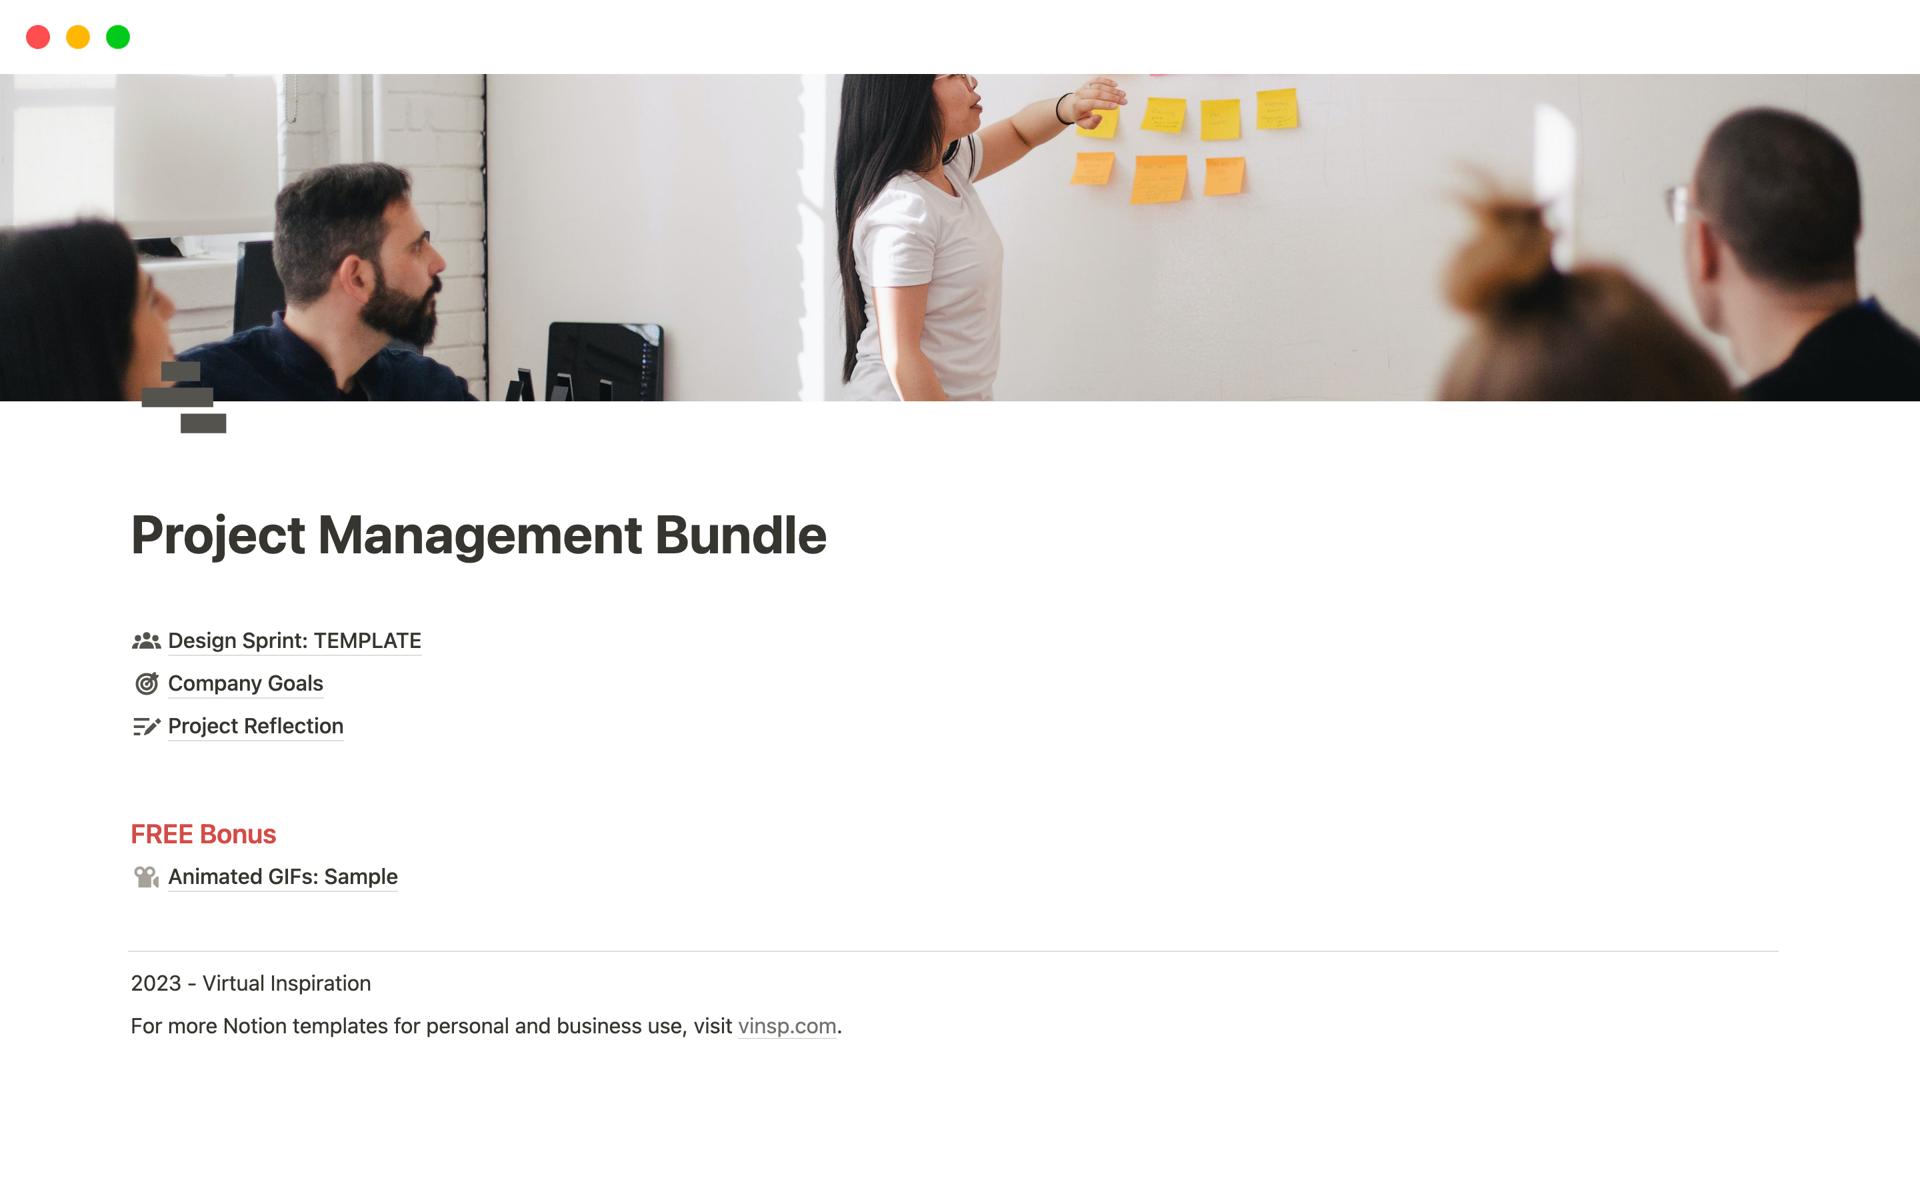 Aperçu du modèle de Project Management Bundle